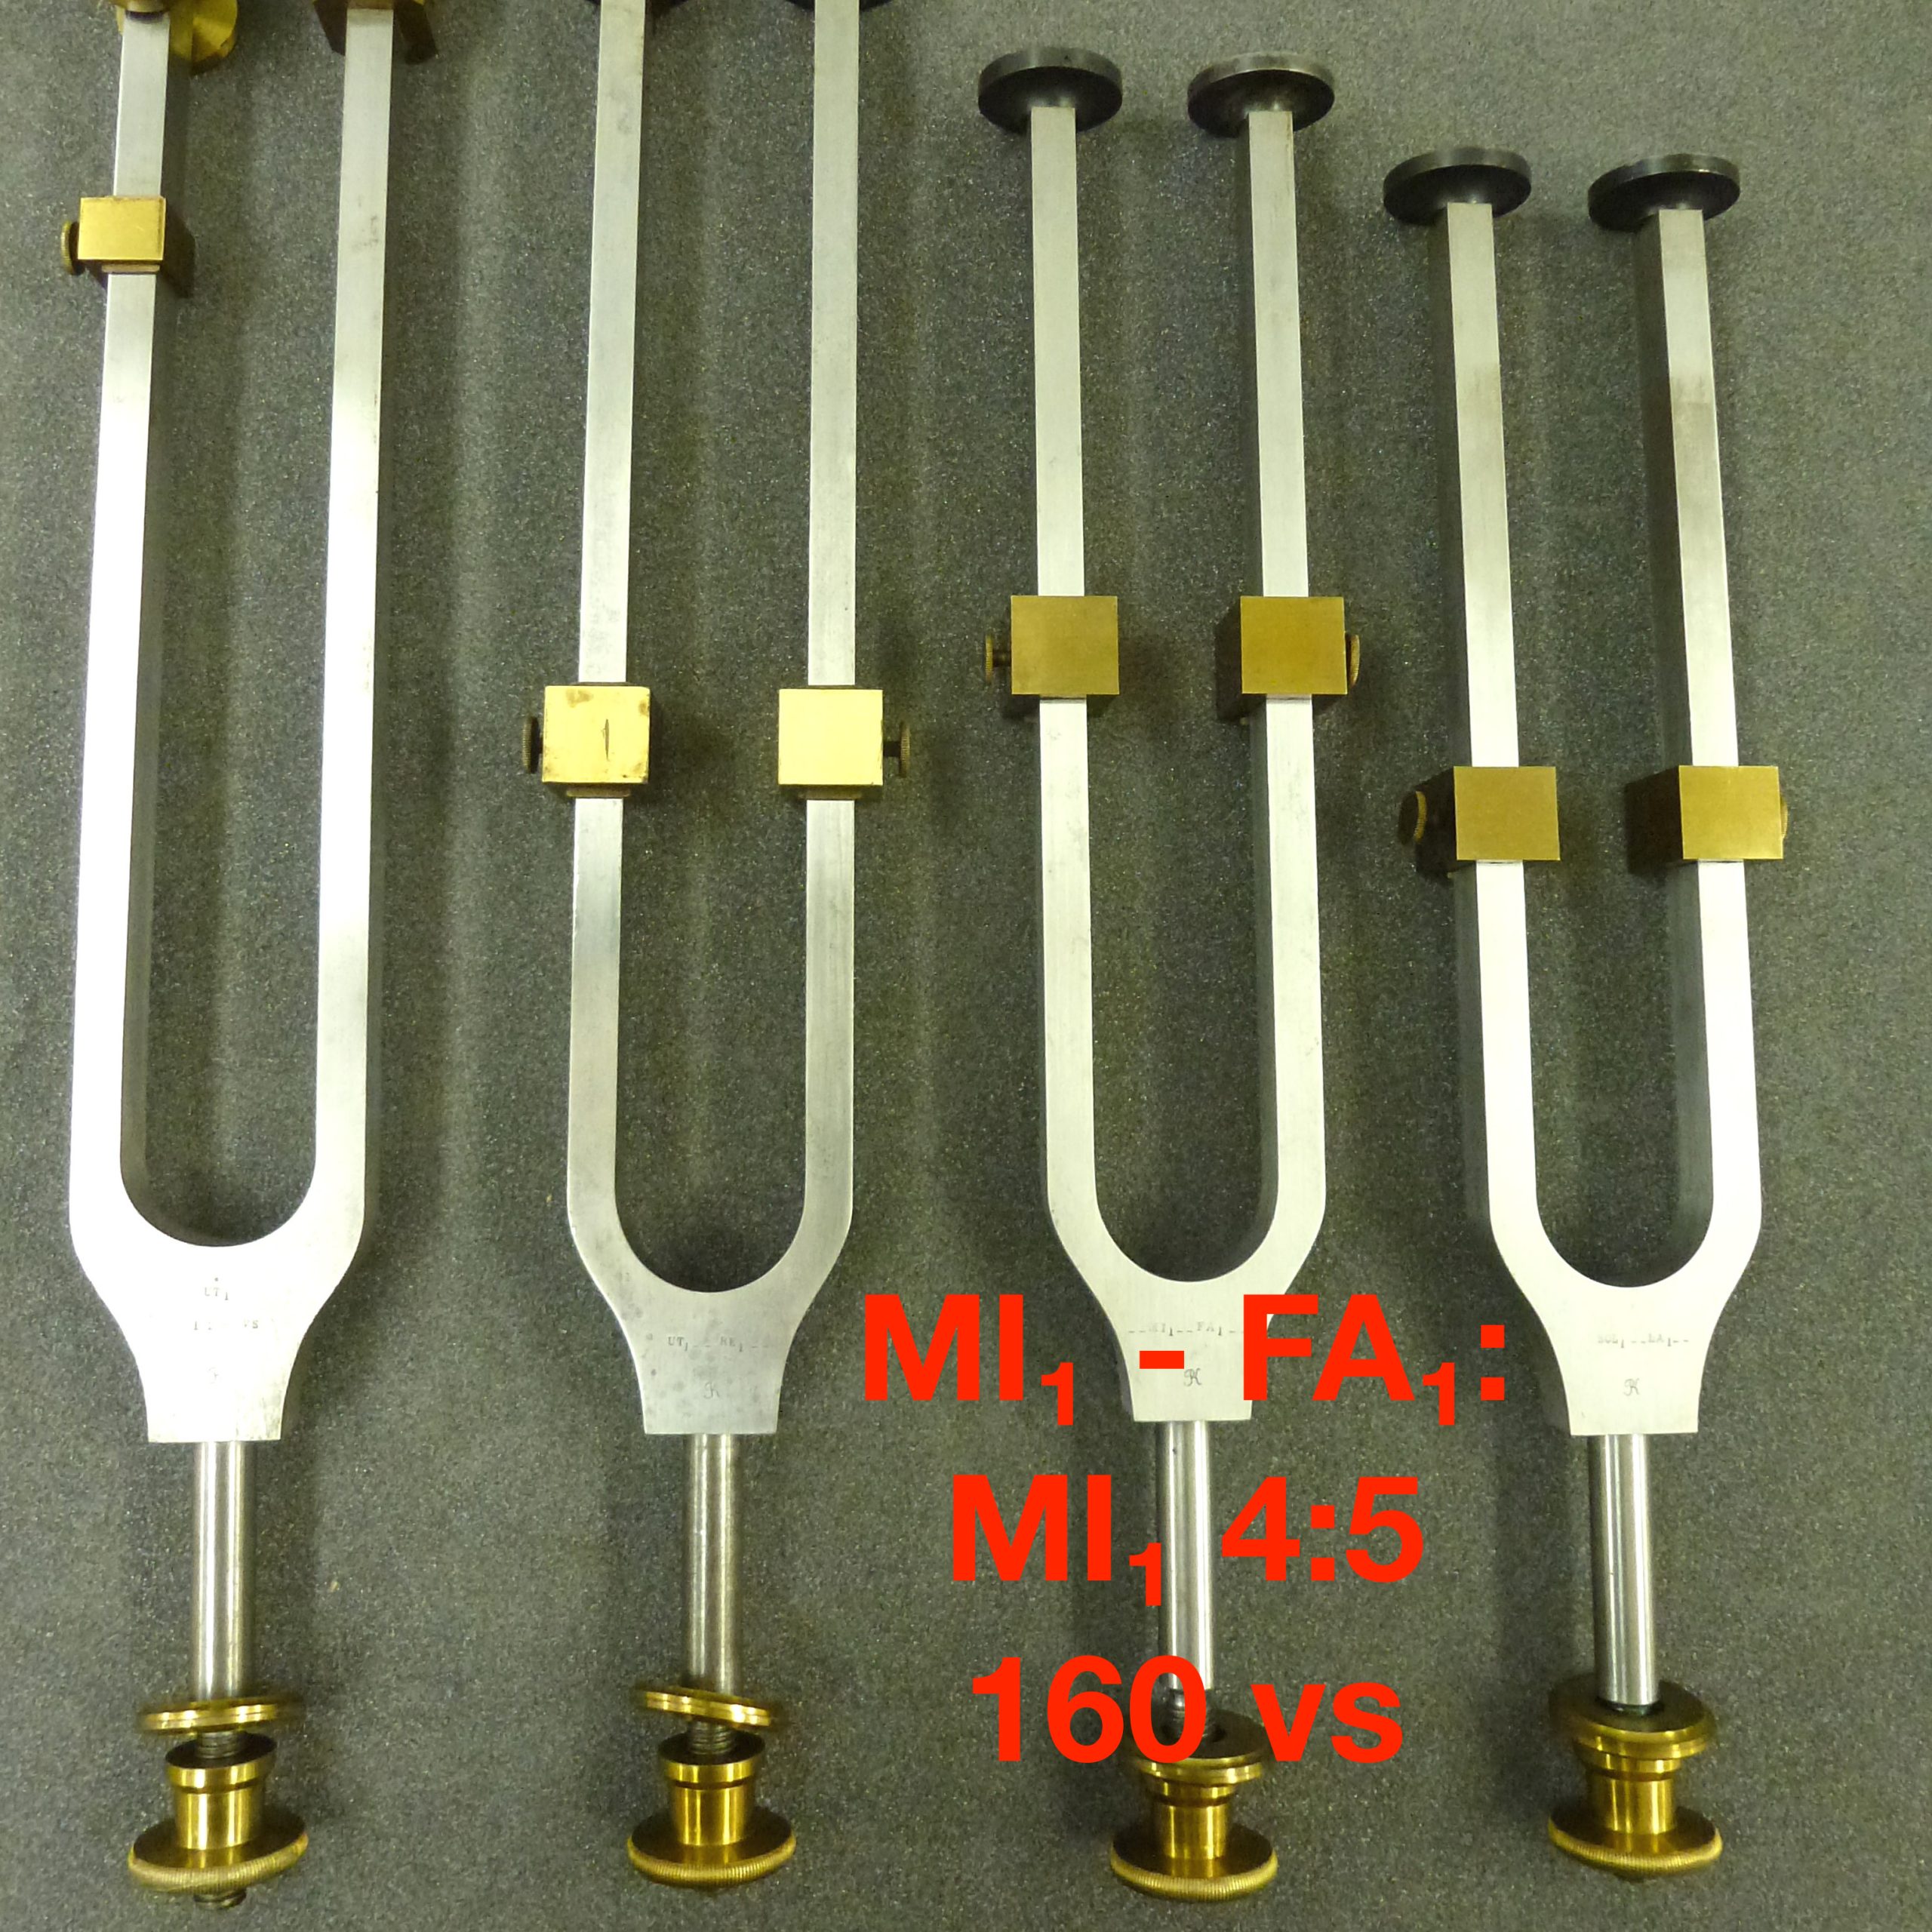 Tuning fork by Dr. R. König: MI₁ - FA₁: MI₁ 4:5